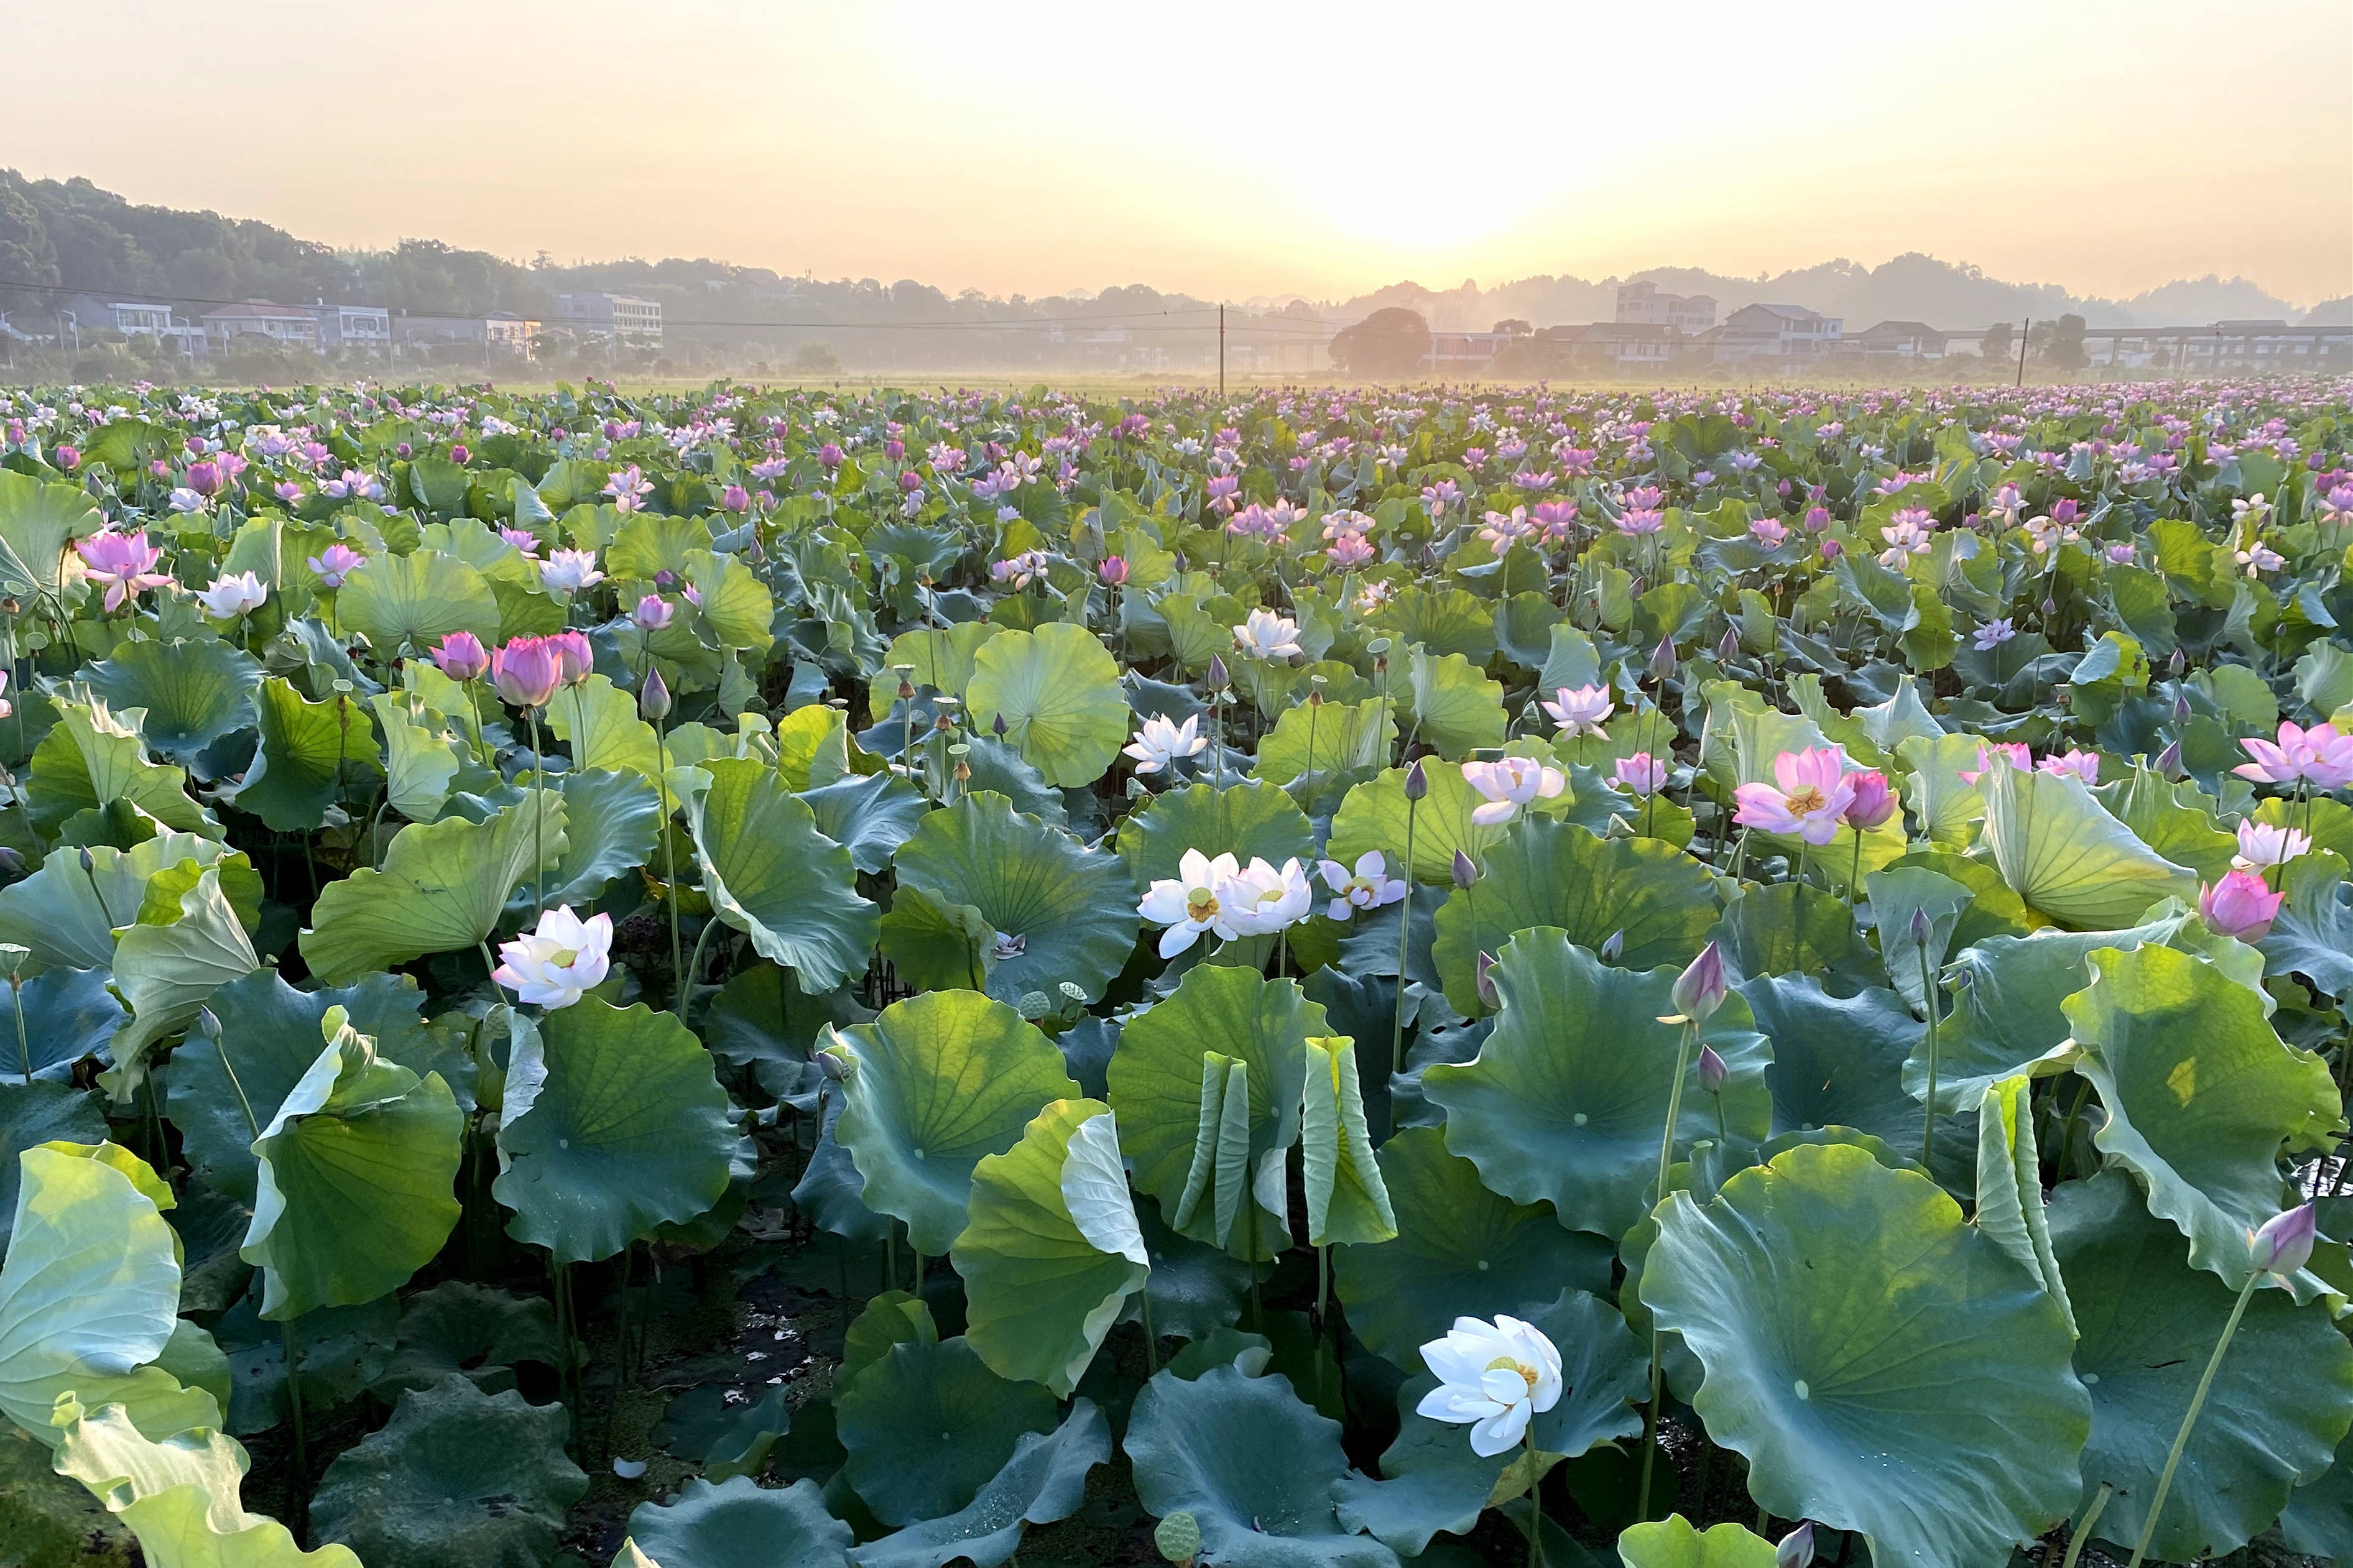 这是湖南省湘潭县花石镇的一处湘莲种植基地(7月29日摄,手机照片)